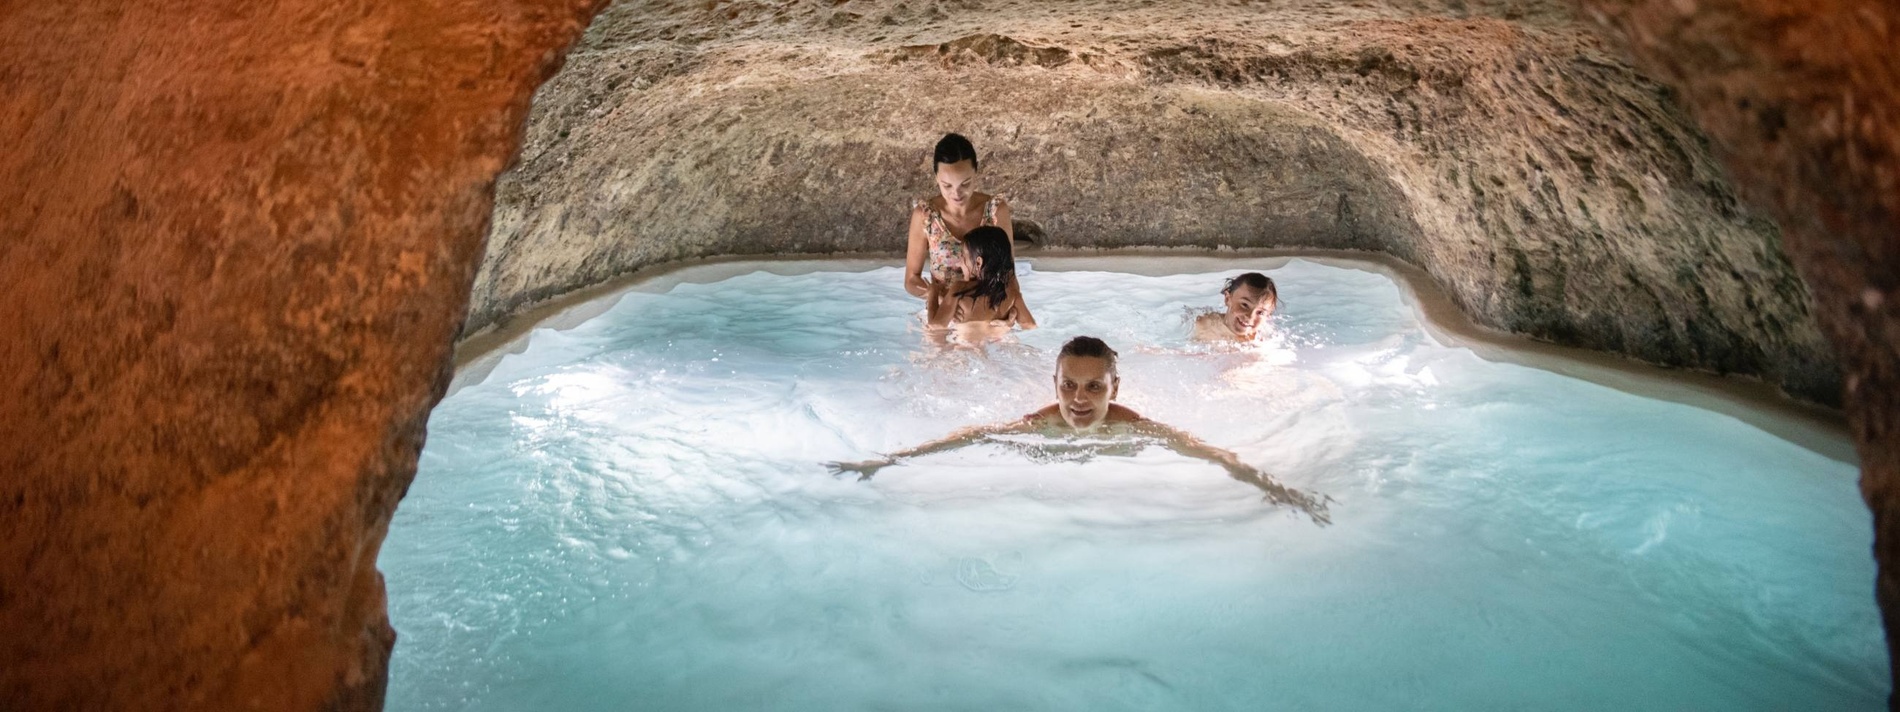 un grupo de personas nadando en una piscina en una cueva